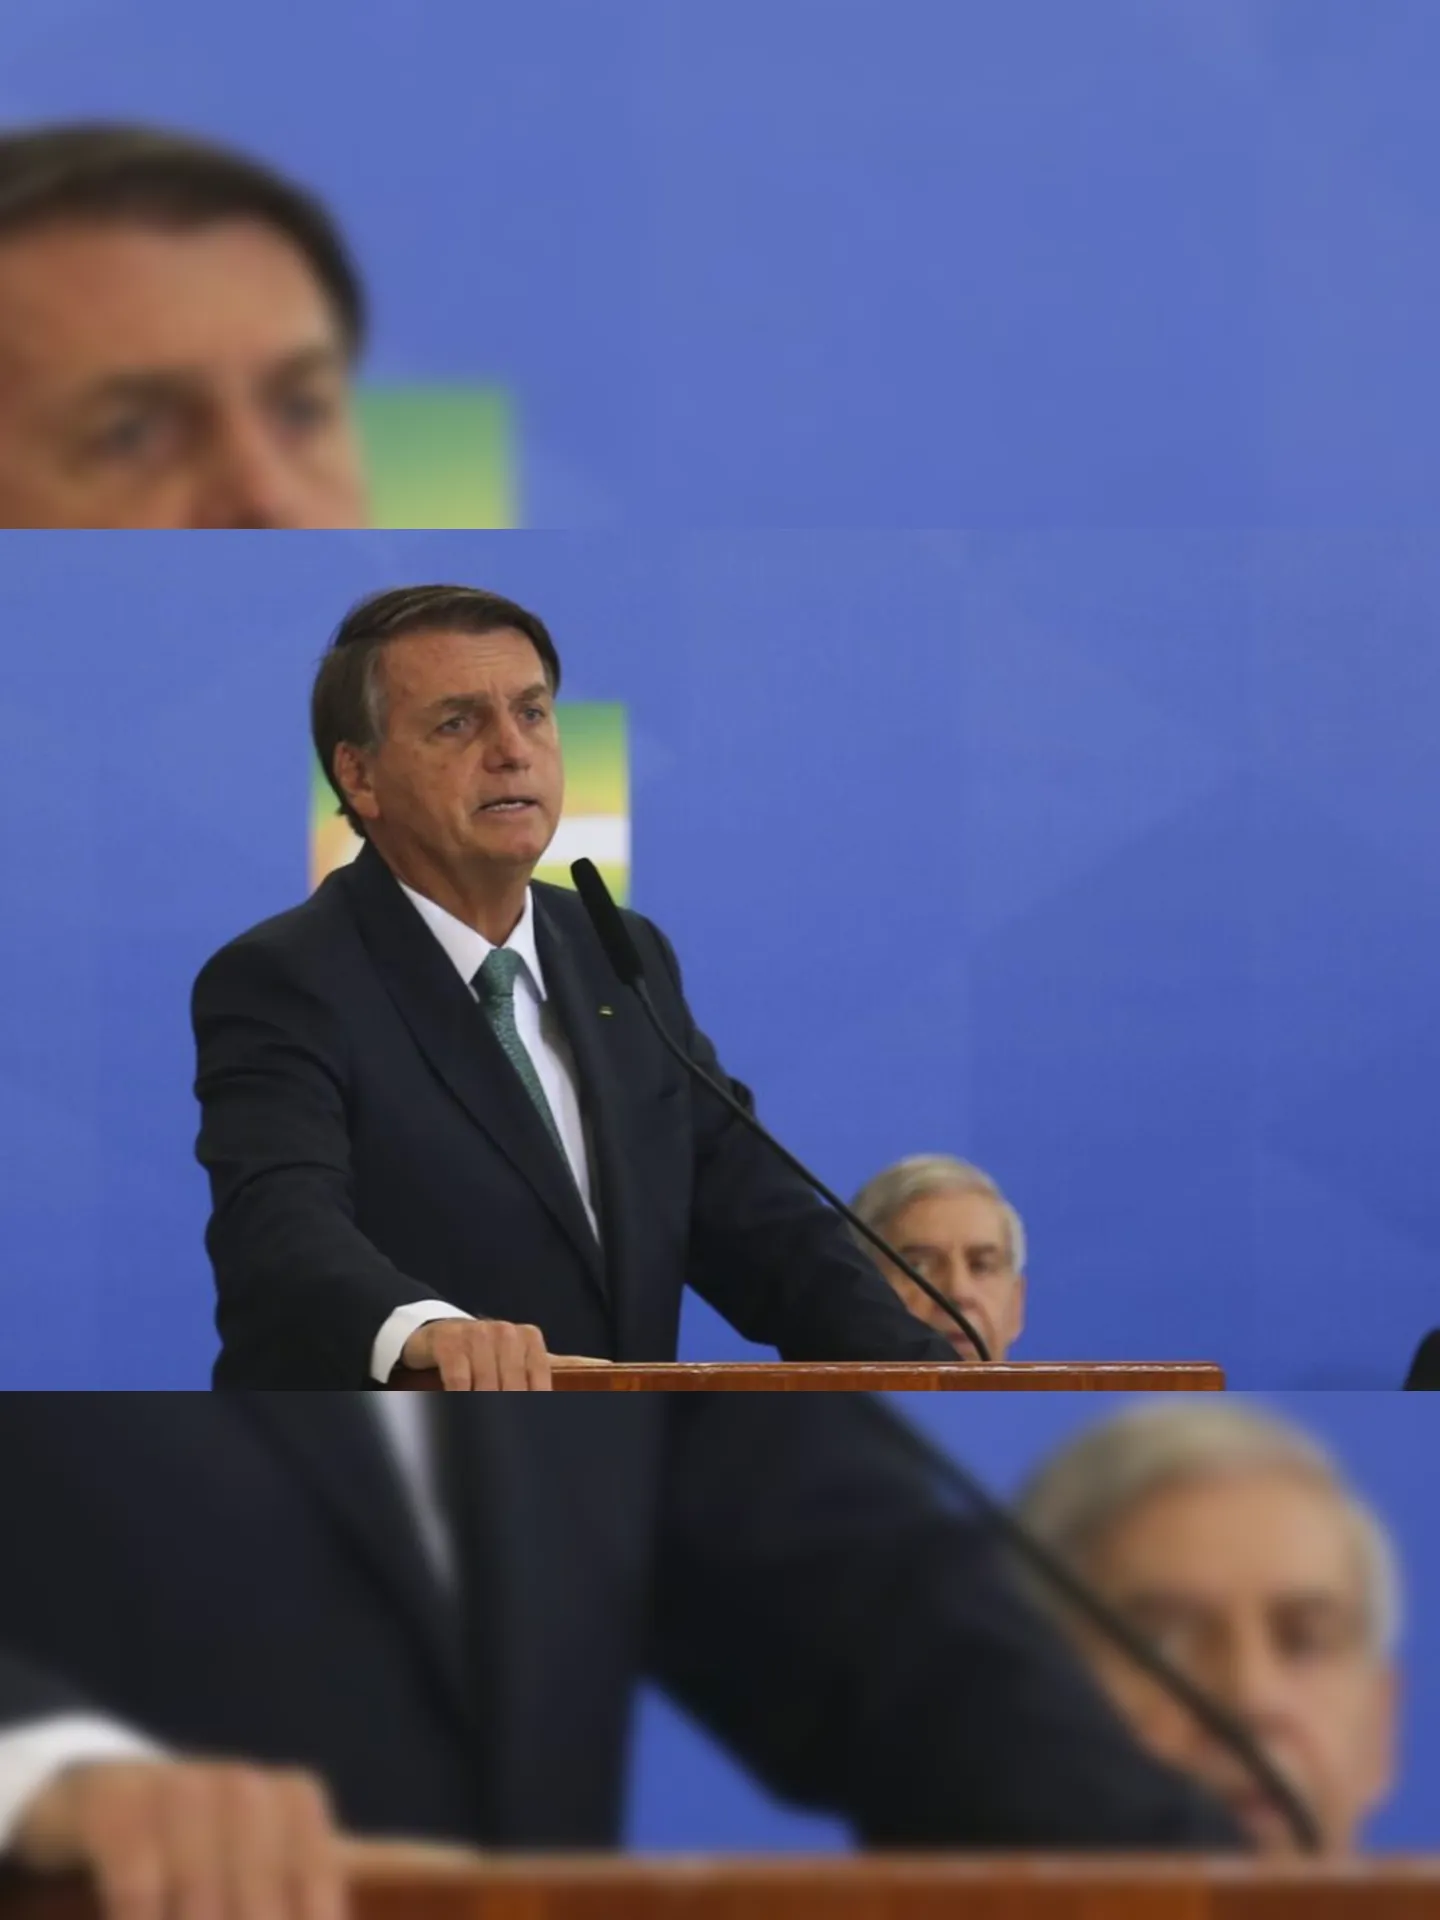 O presidente Jair Bolsonaro participa do lançamento do Programa Nacional de Prestação de Serviço Civil Voluntário, no Palácio do Planalto.